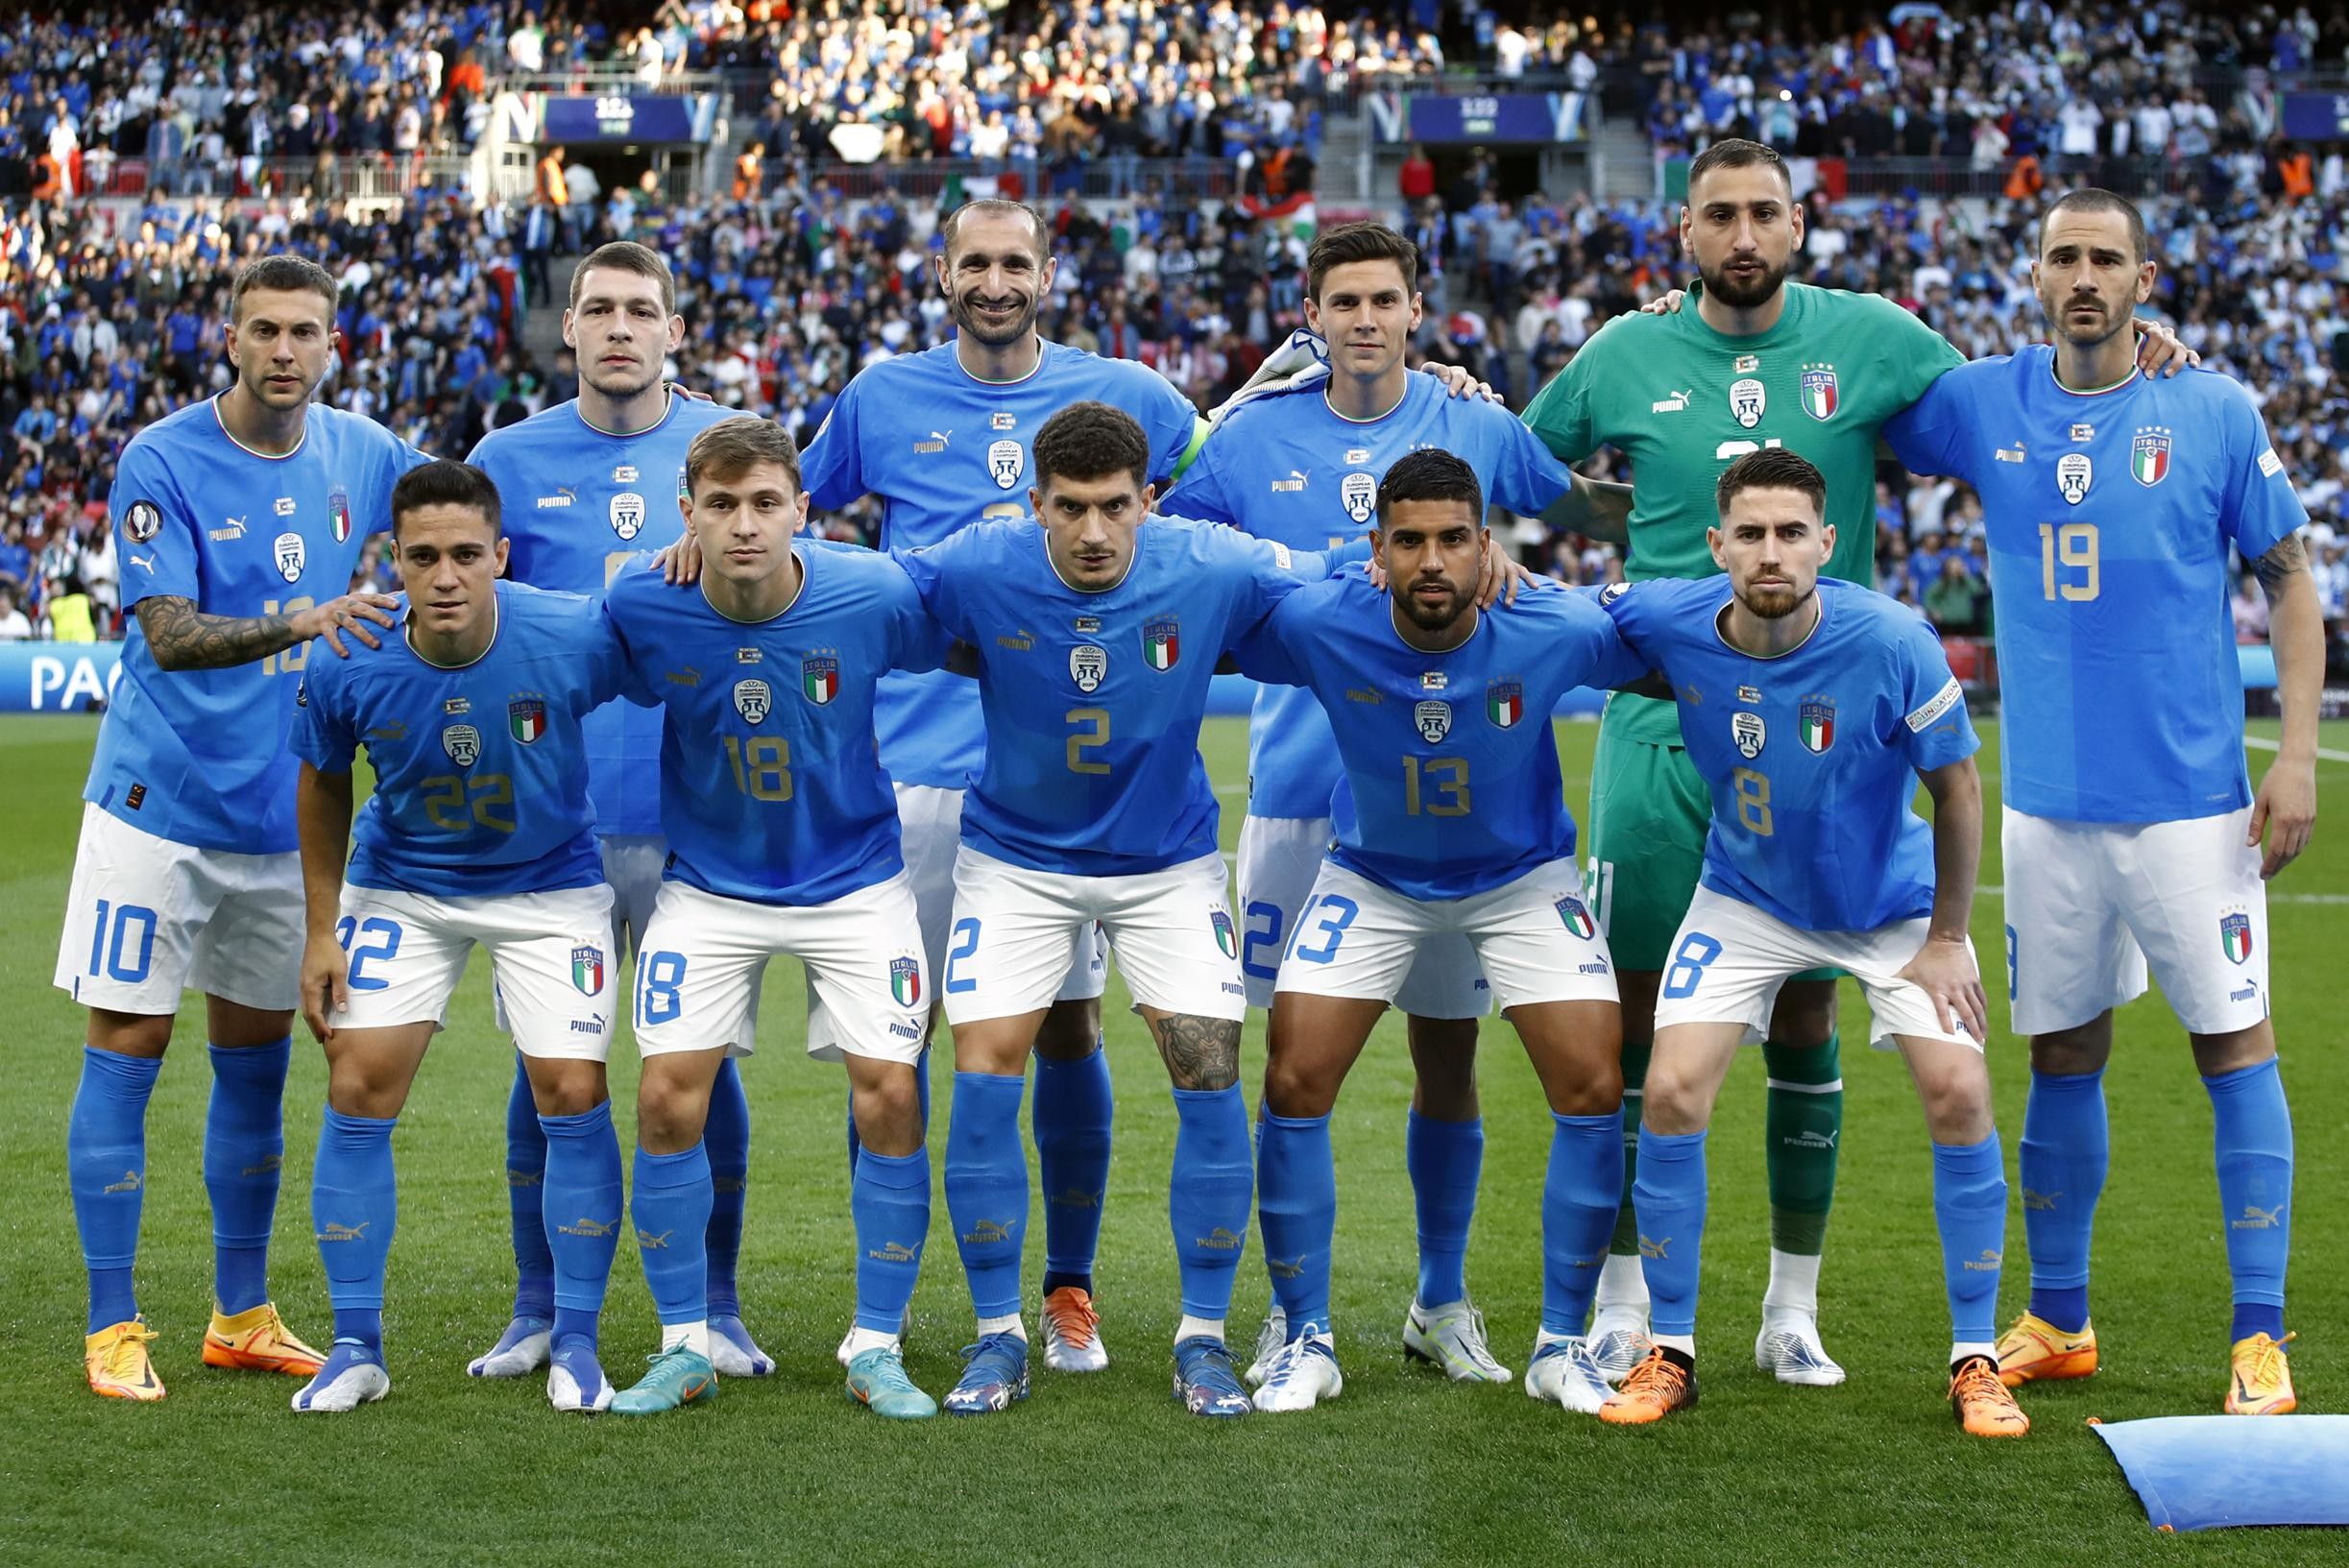 La leggenda del calcio Roberto Baggio trova incomprensibile che l’Italia non ottenga un biglietto per la Coppa del Mondo come campione d’Europa: “Potere!”